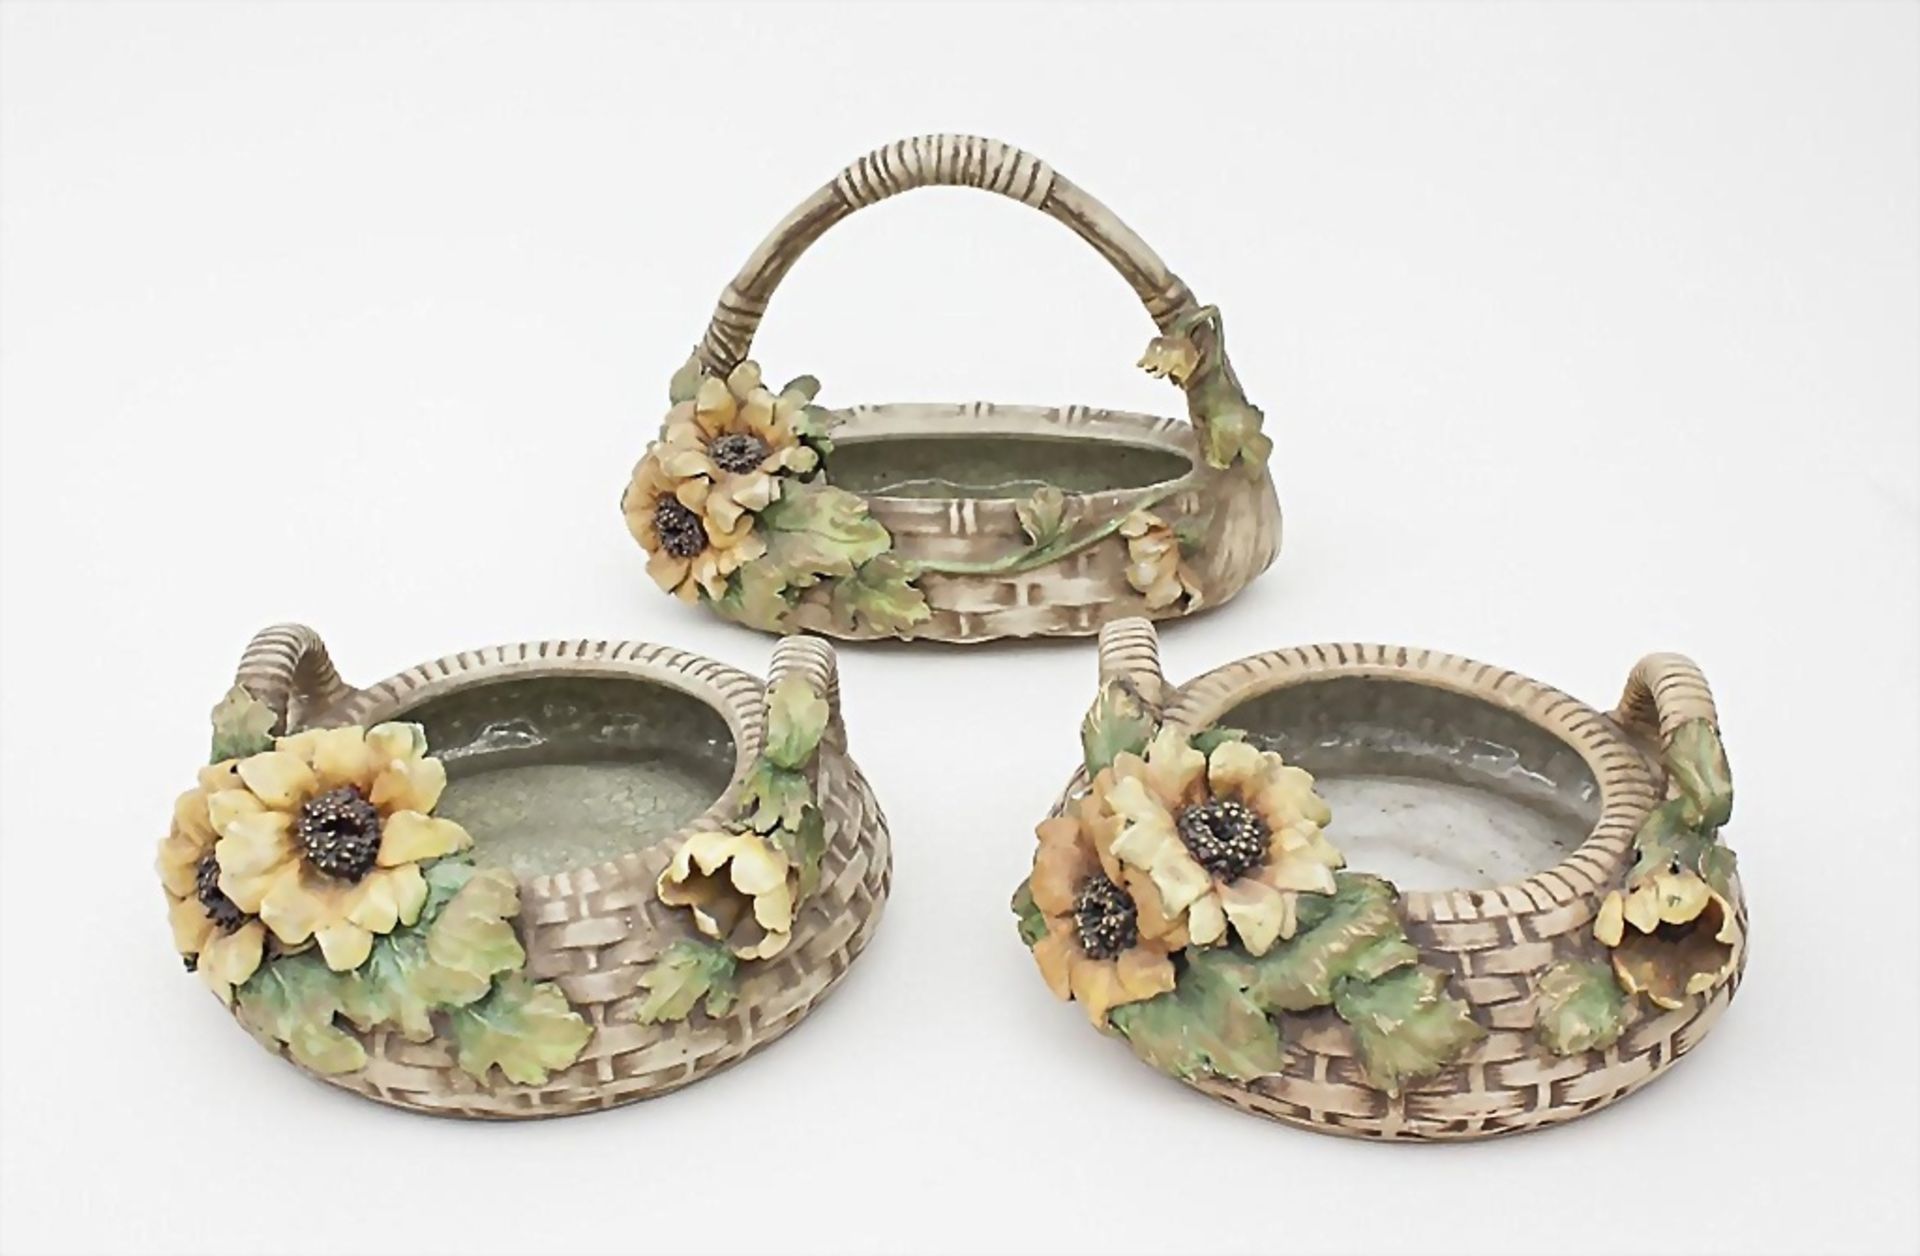 3 Jugendstil-Korbschalen mit Sonnenblumen/3 Art Nouveau Ceramic Baskets with Sunflowers, ... - Bild 2 aus 4